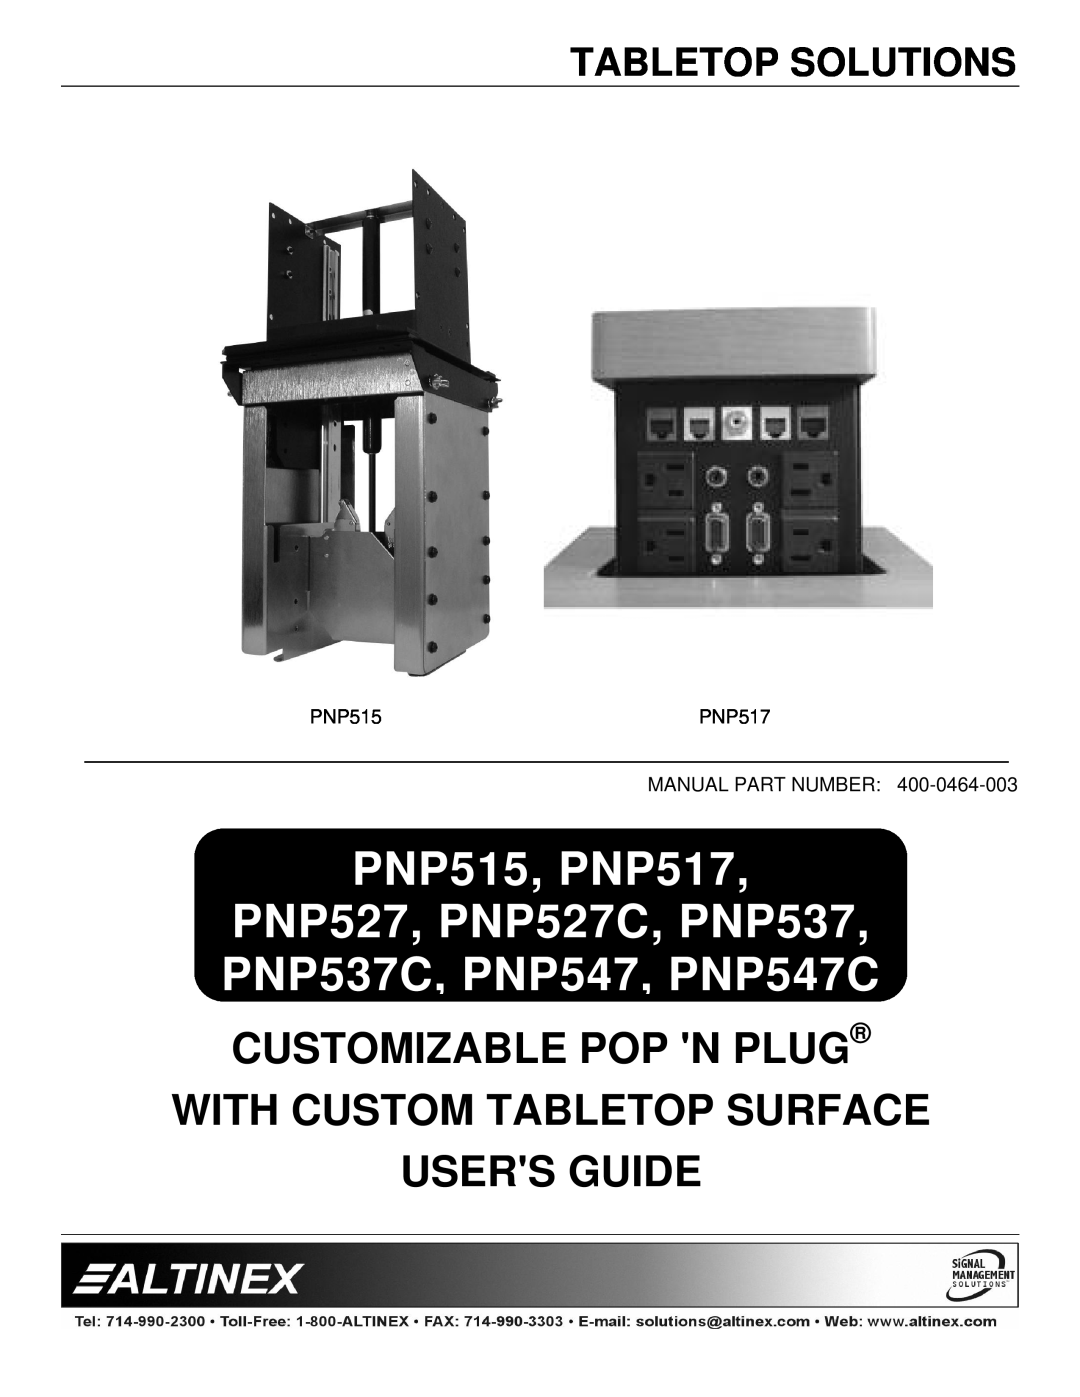 Altinex manual Tabletop Solutions, PNP515, PNP517, PNP527, PNP527C, PNP537, PNP537C, PNP547, PNP547C 